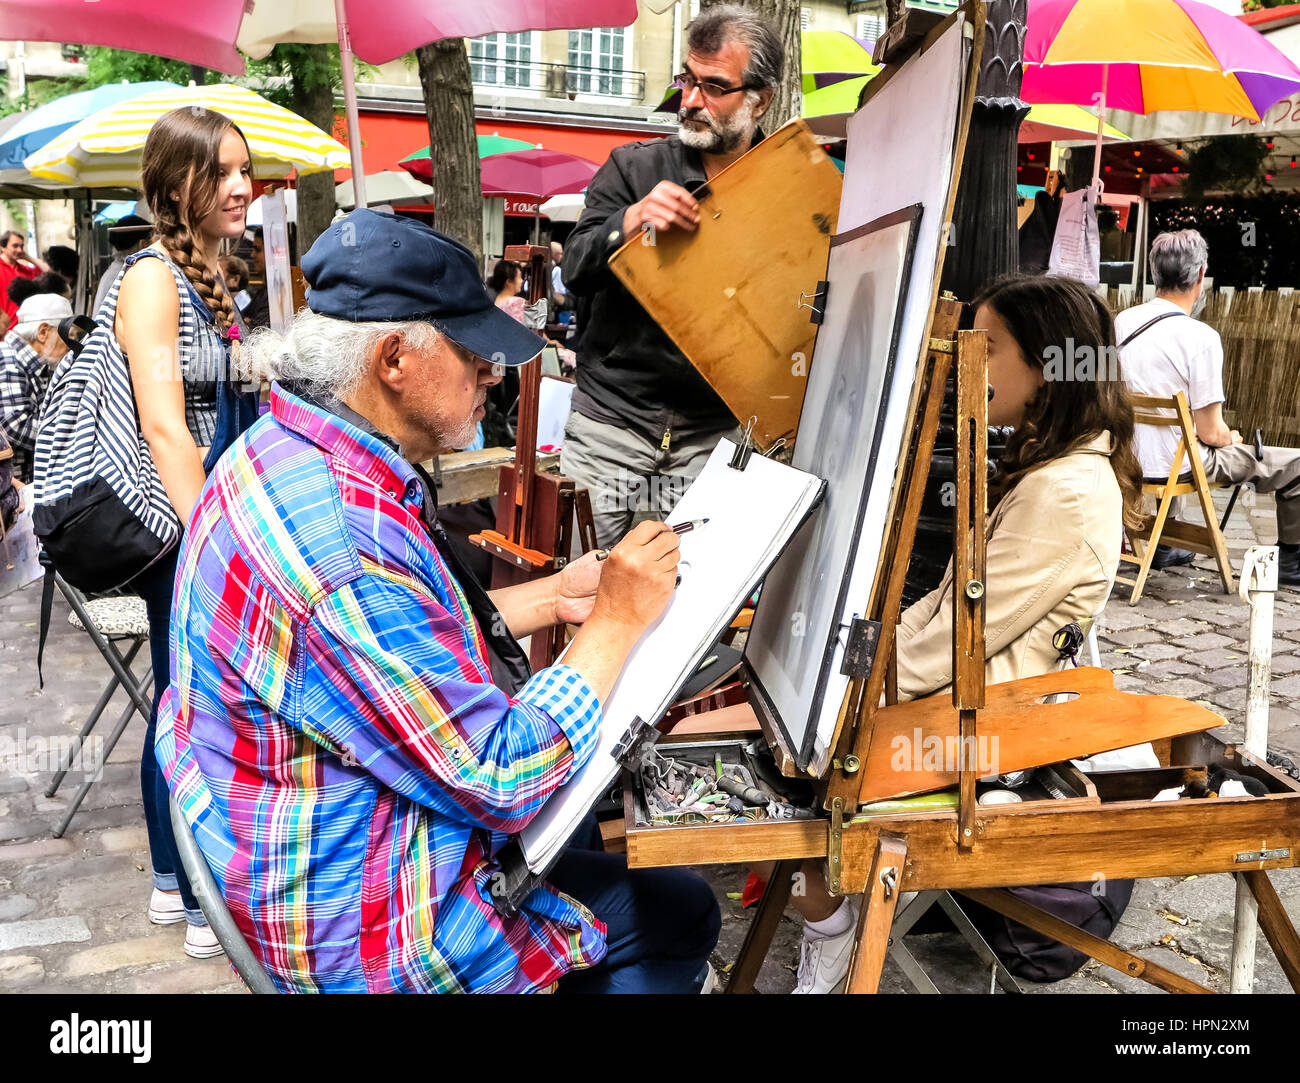 Montmartre Street Painters, Place du Tertre in Paris Stock Photo